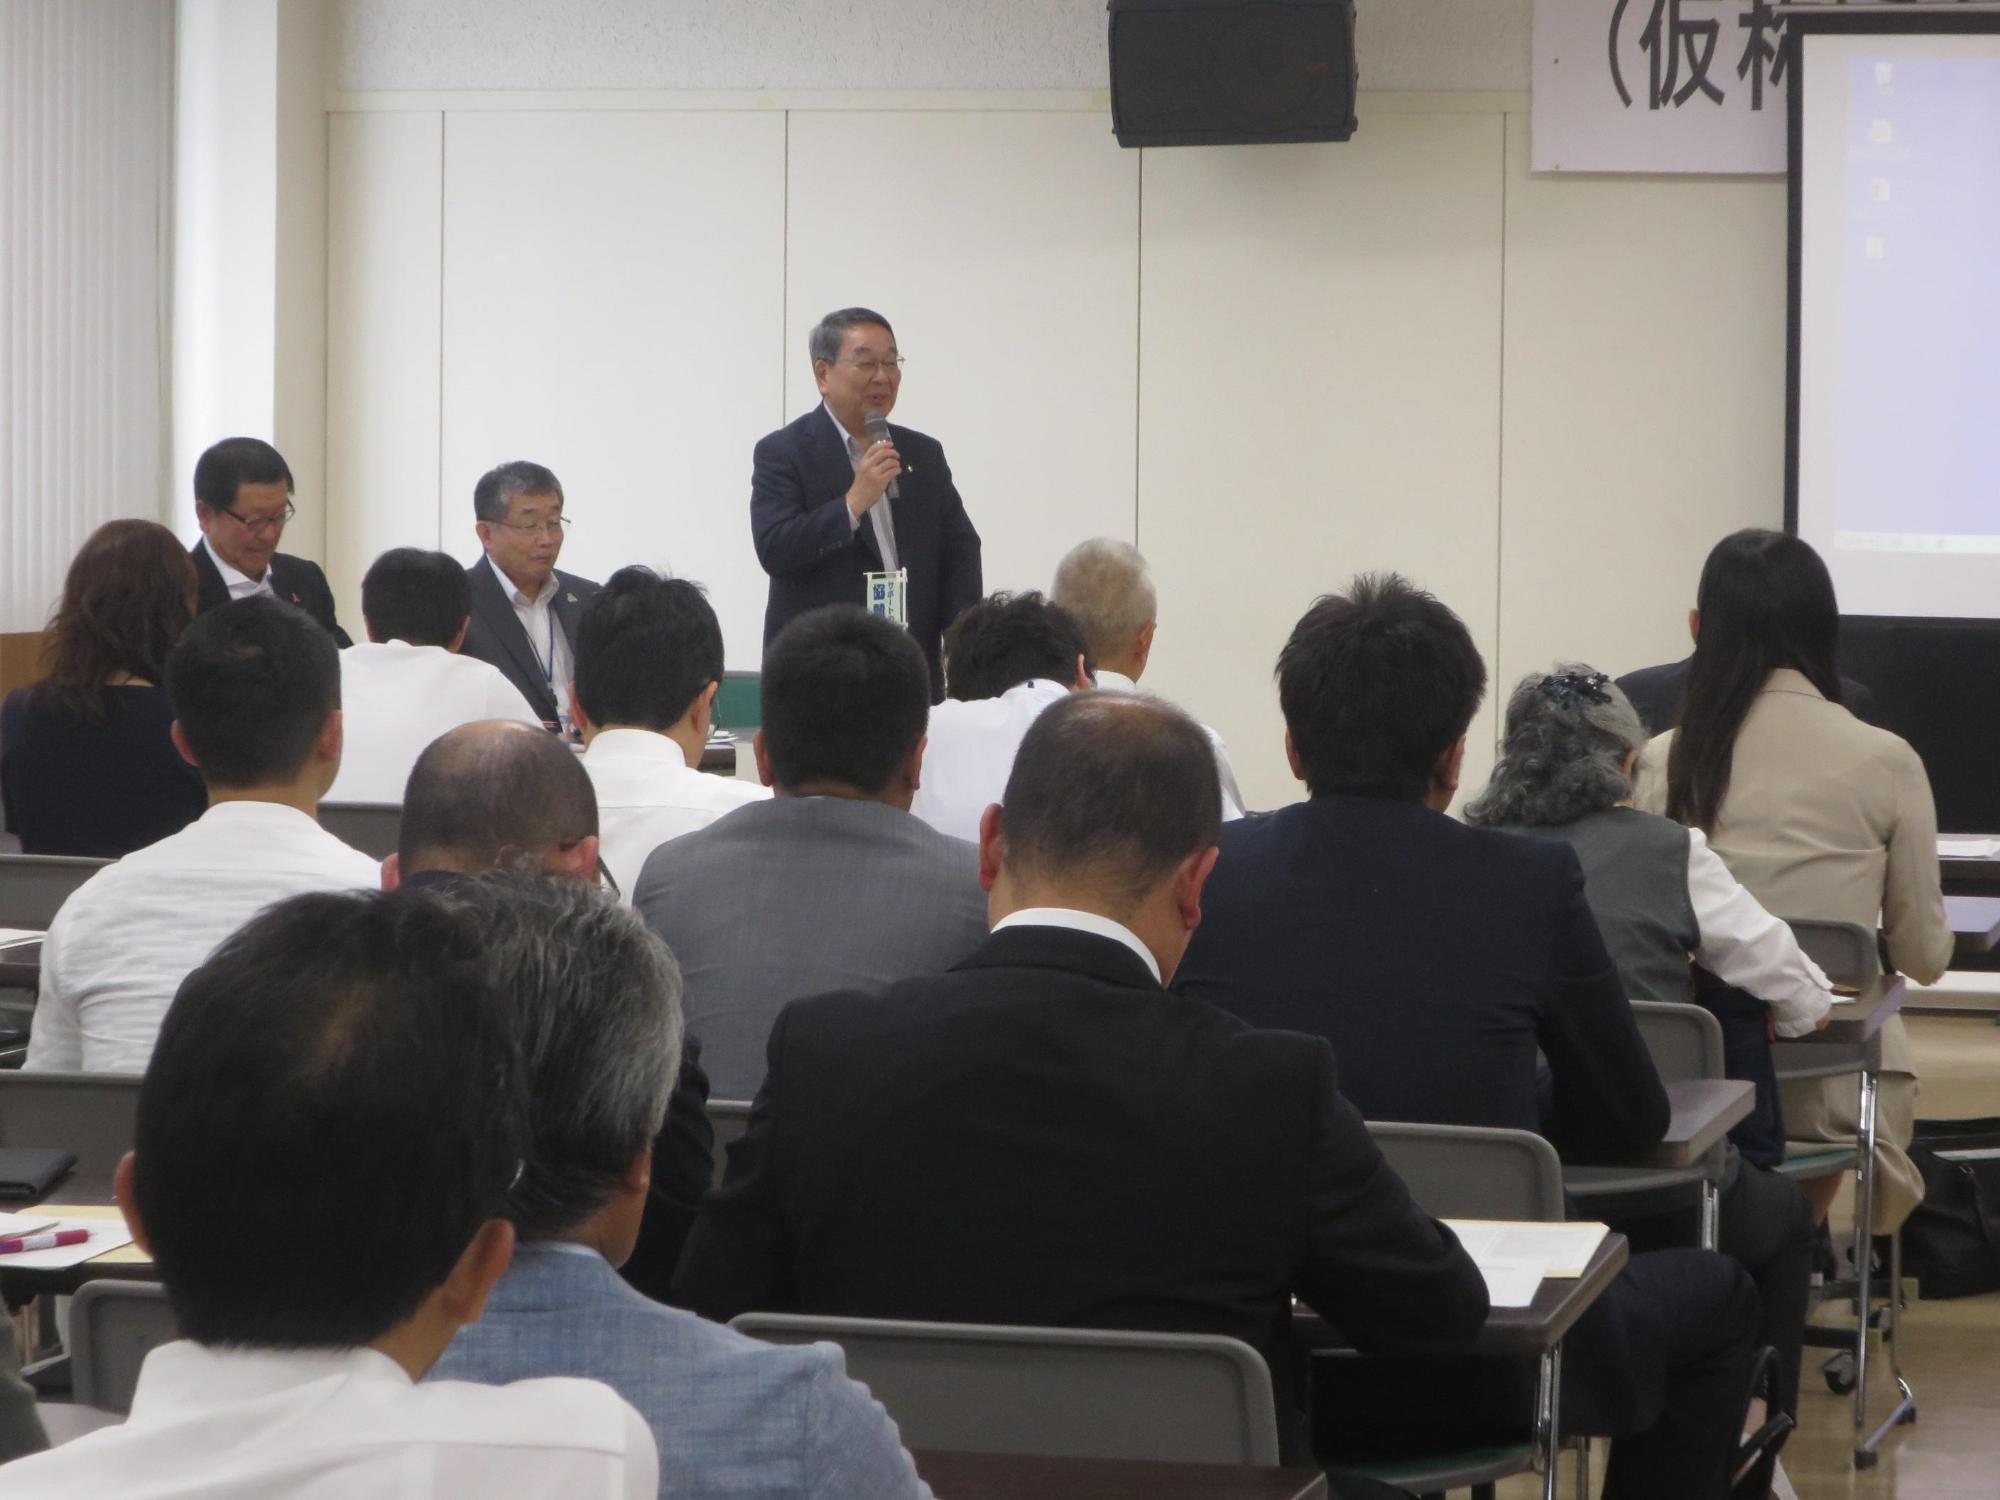 発会式にて参加者へ呼びかける原田市長の写真